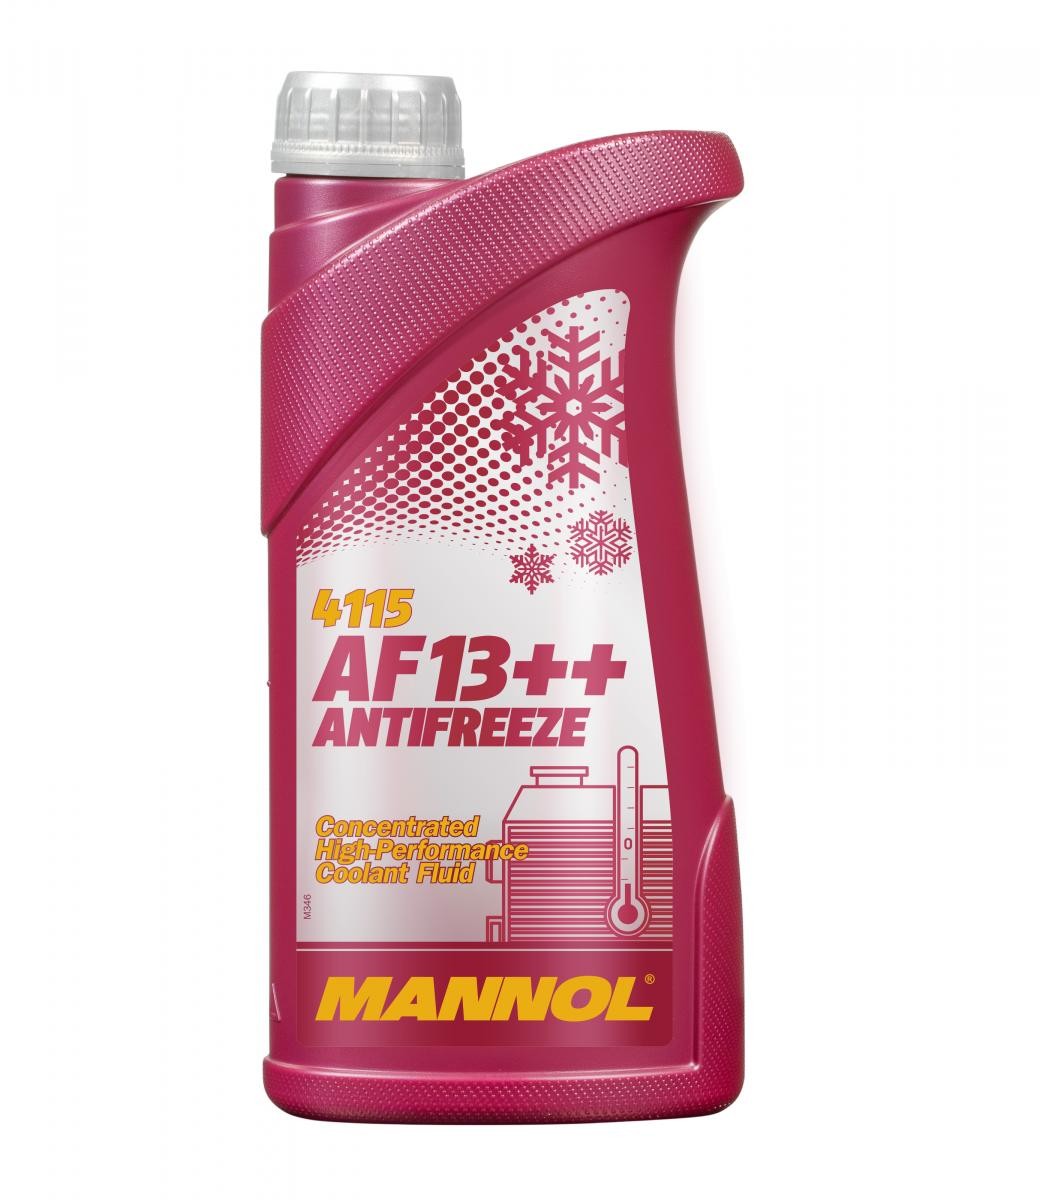 PEUGEOT NK7 Kühlmittel G12 Rot, 1l, -38(50/50) MANNOL AF13++, High-performance MN4115-1